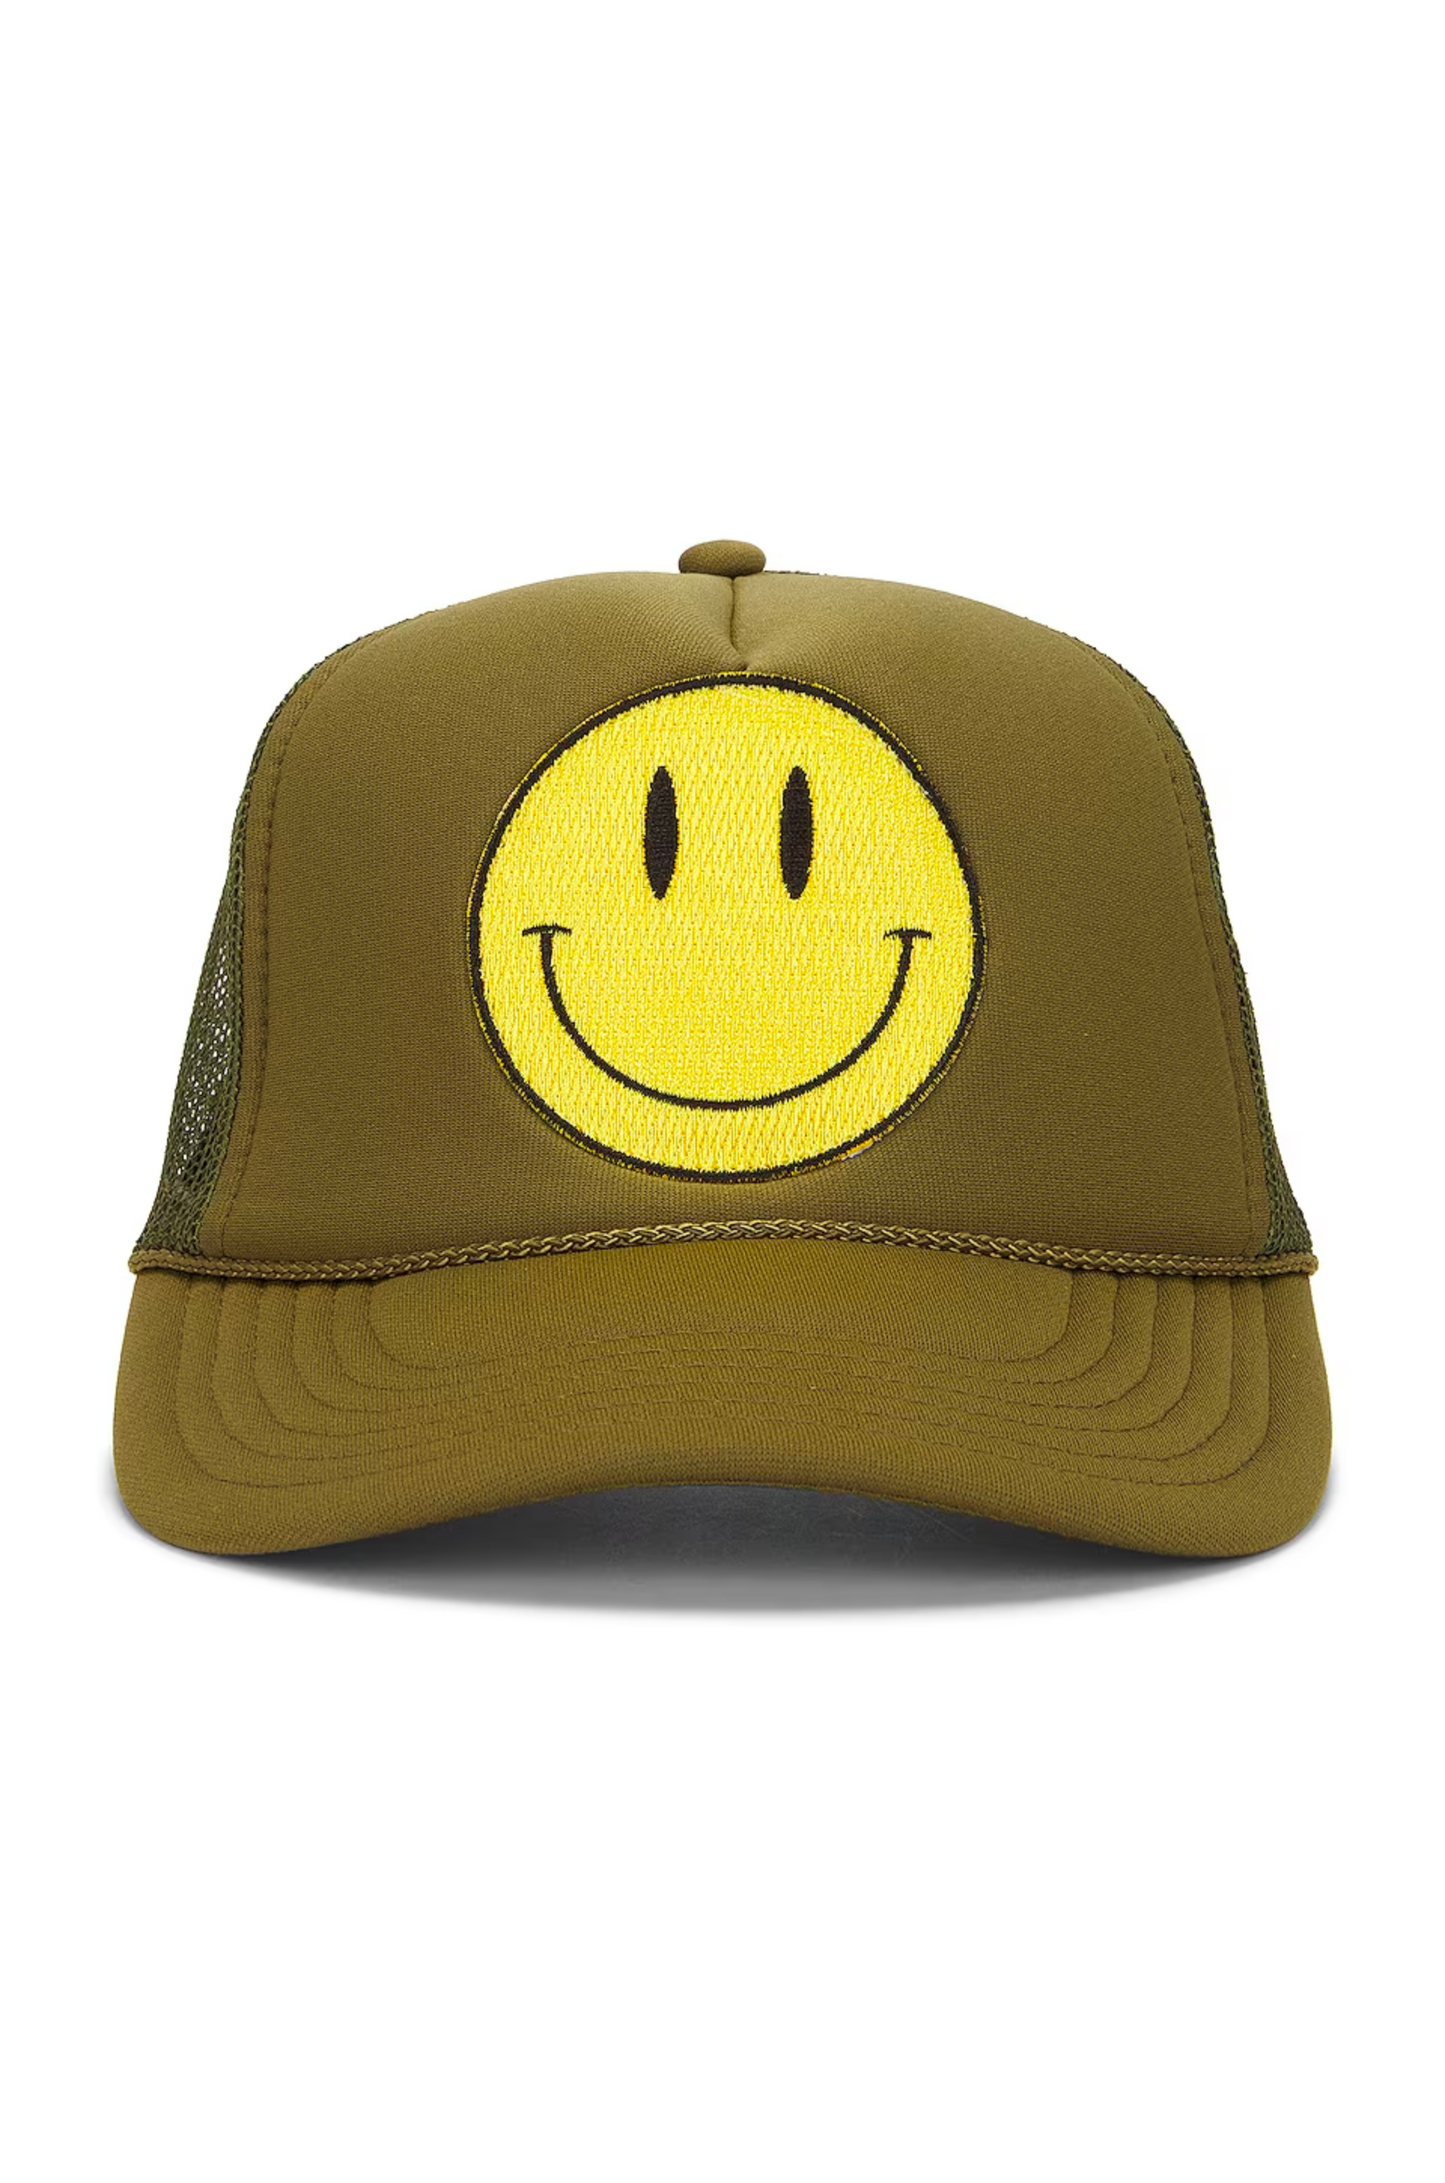 Happy Hat - Olive